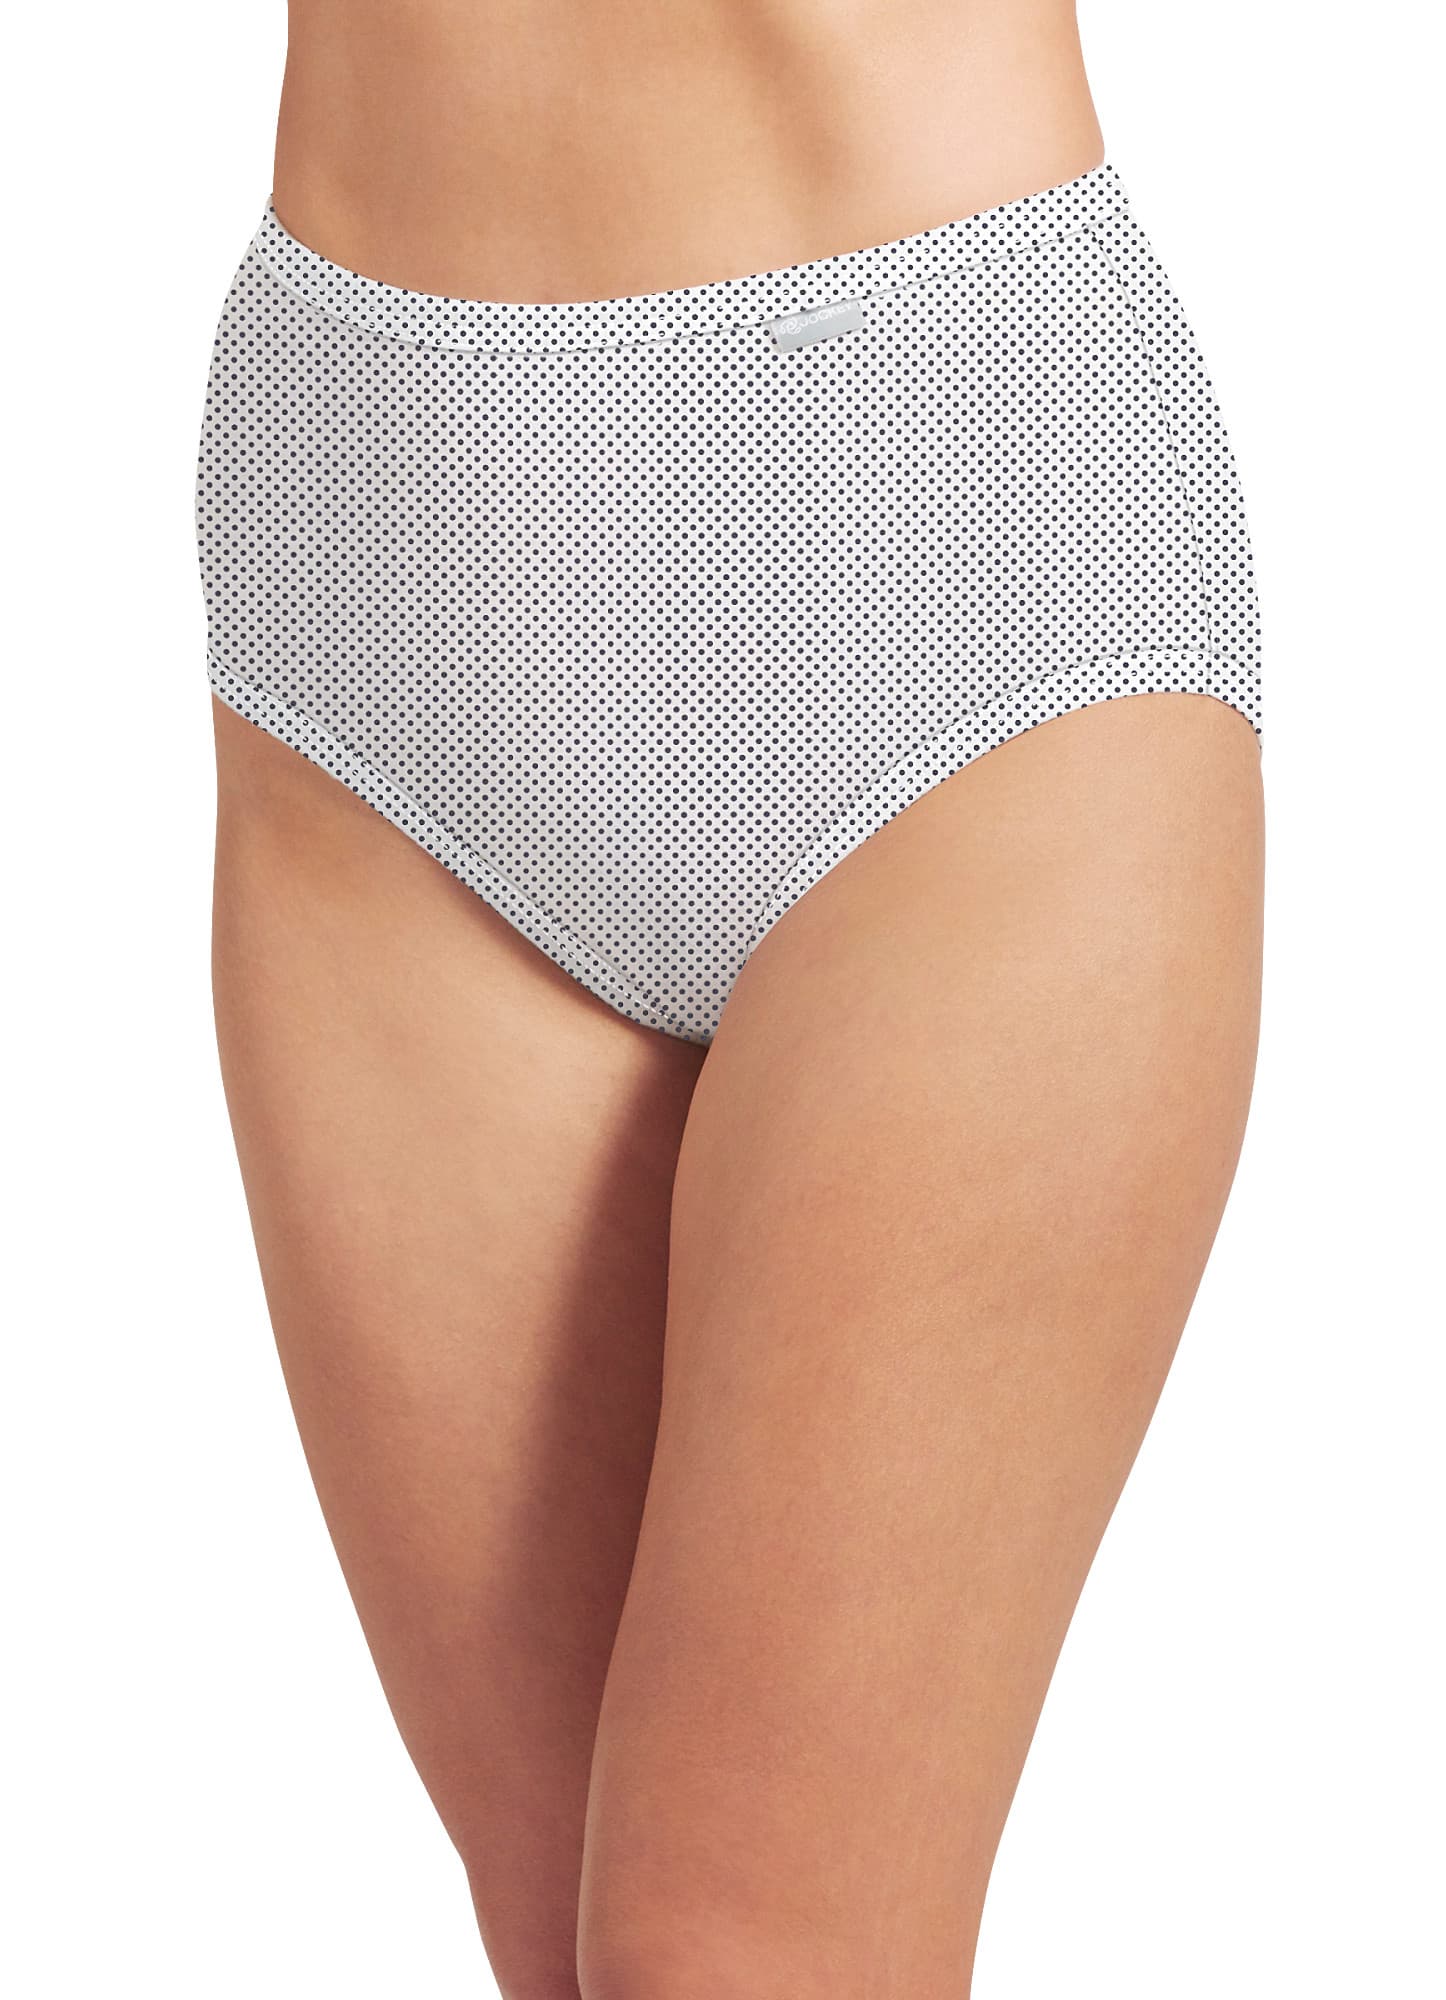 Jockey Women's size 7 Underwear Elance Cotton Briefs Cut 3 Pack